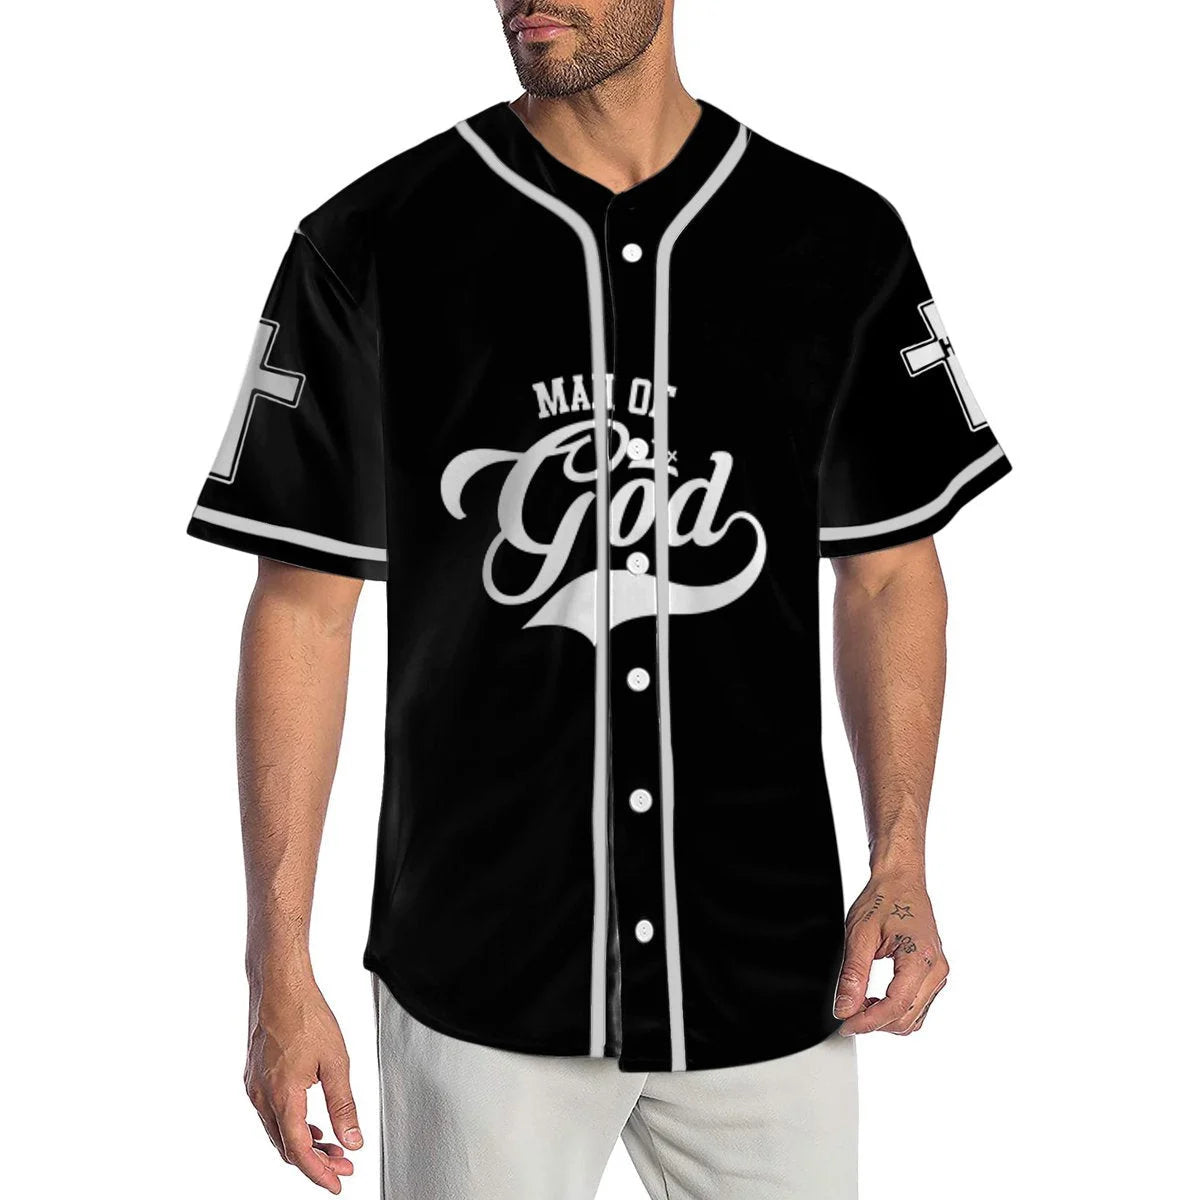 Personalized Jesus Baseball Jersey - Cross Baseball Jersey - Gift For Christians